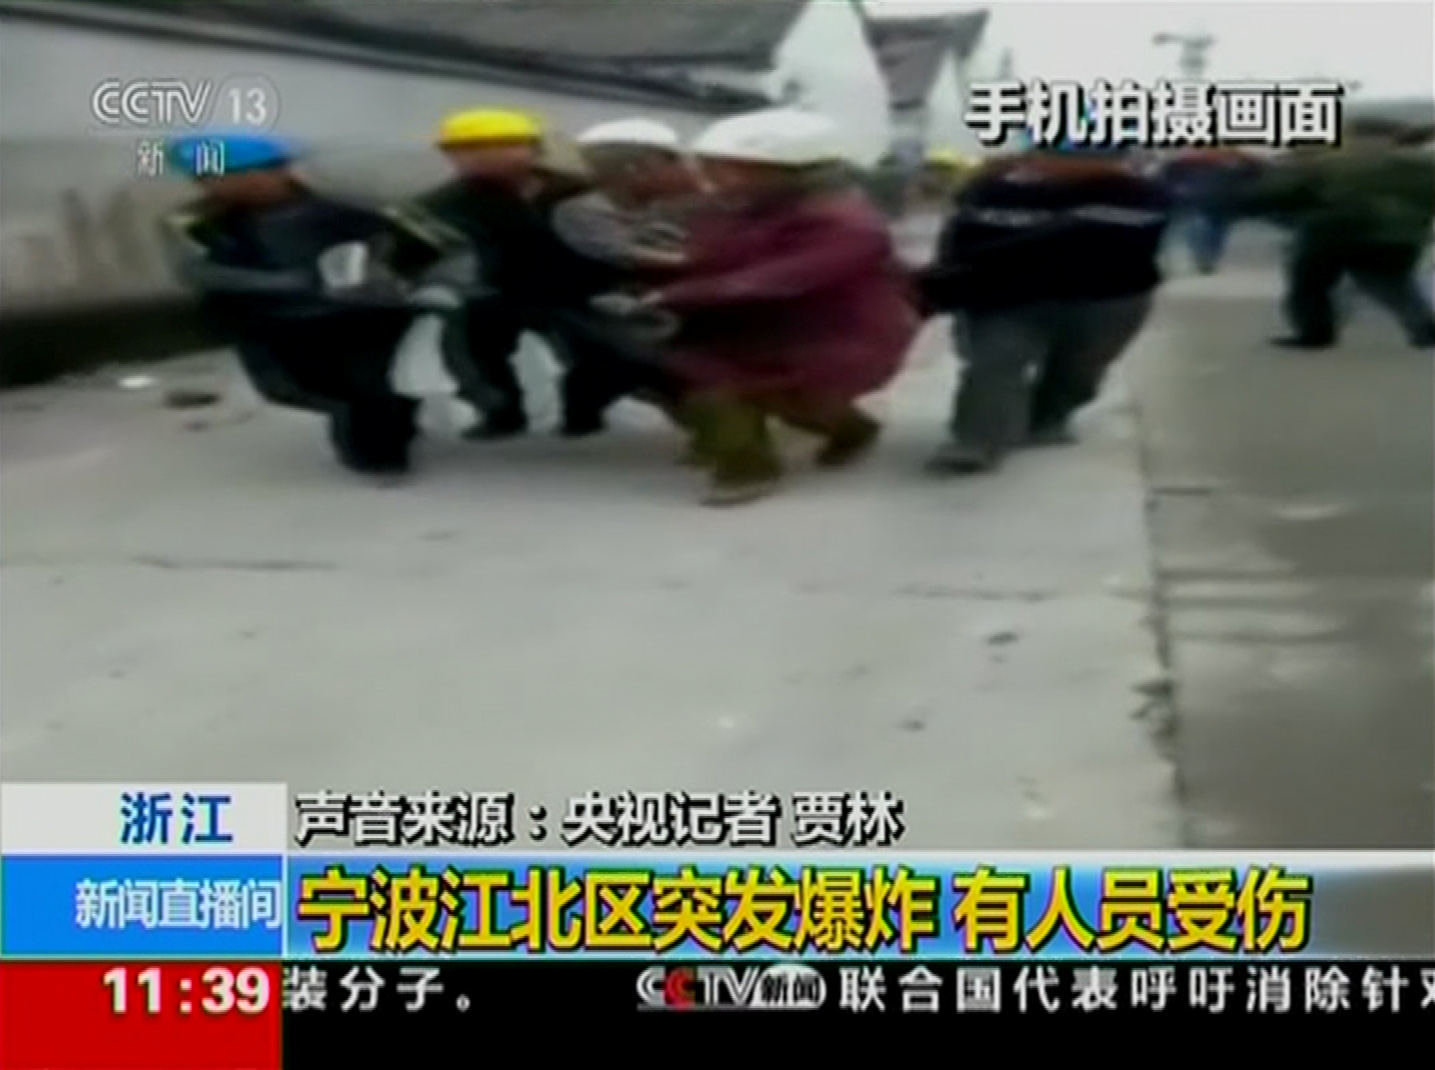 رجال الانقاذ تحاول انتشال أحد الضحايا جراء الانفجار